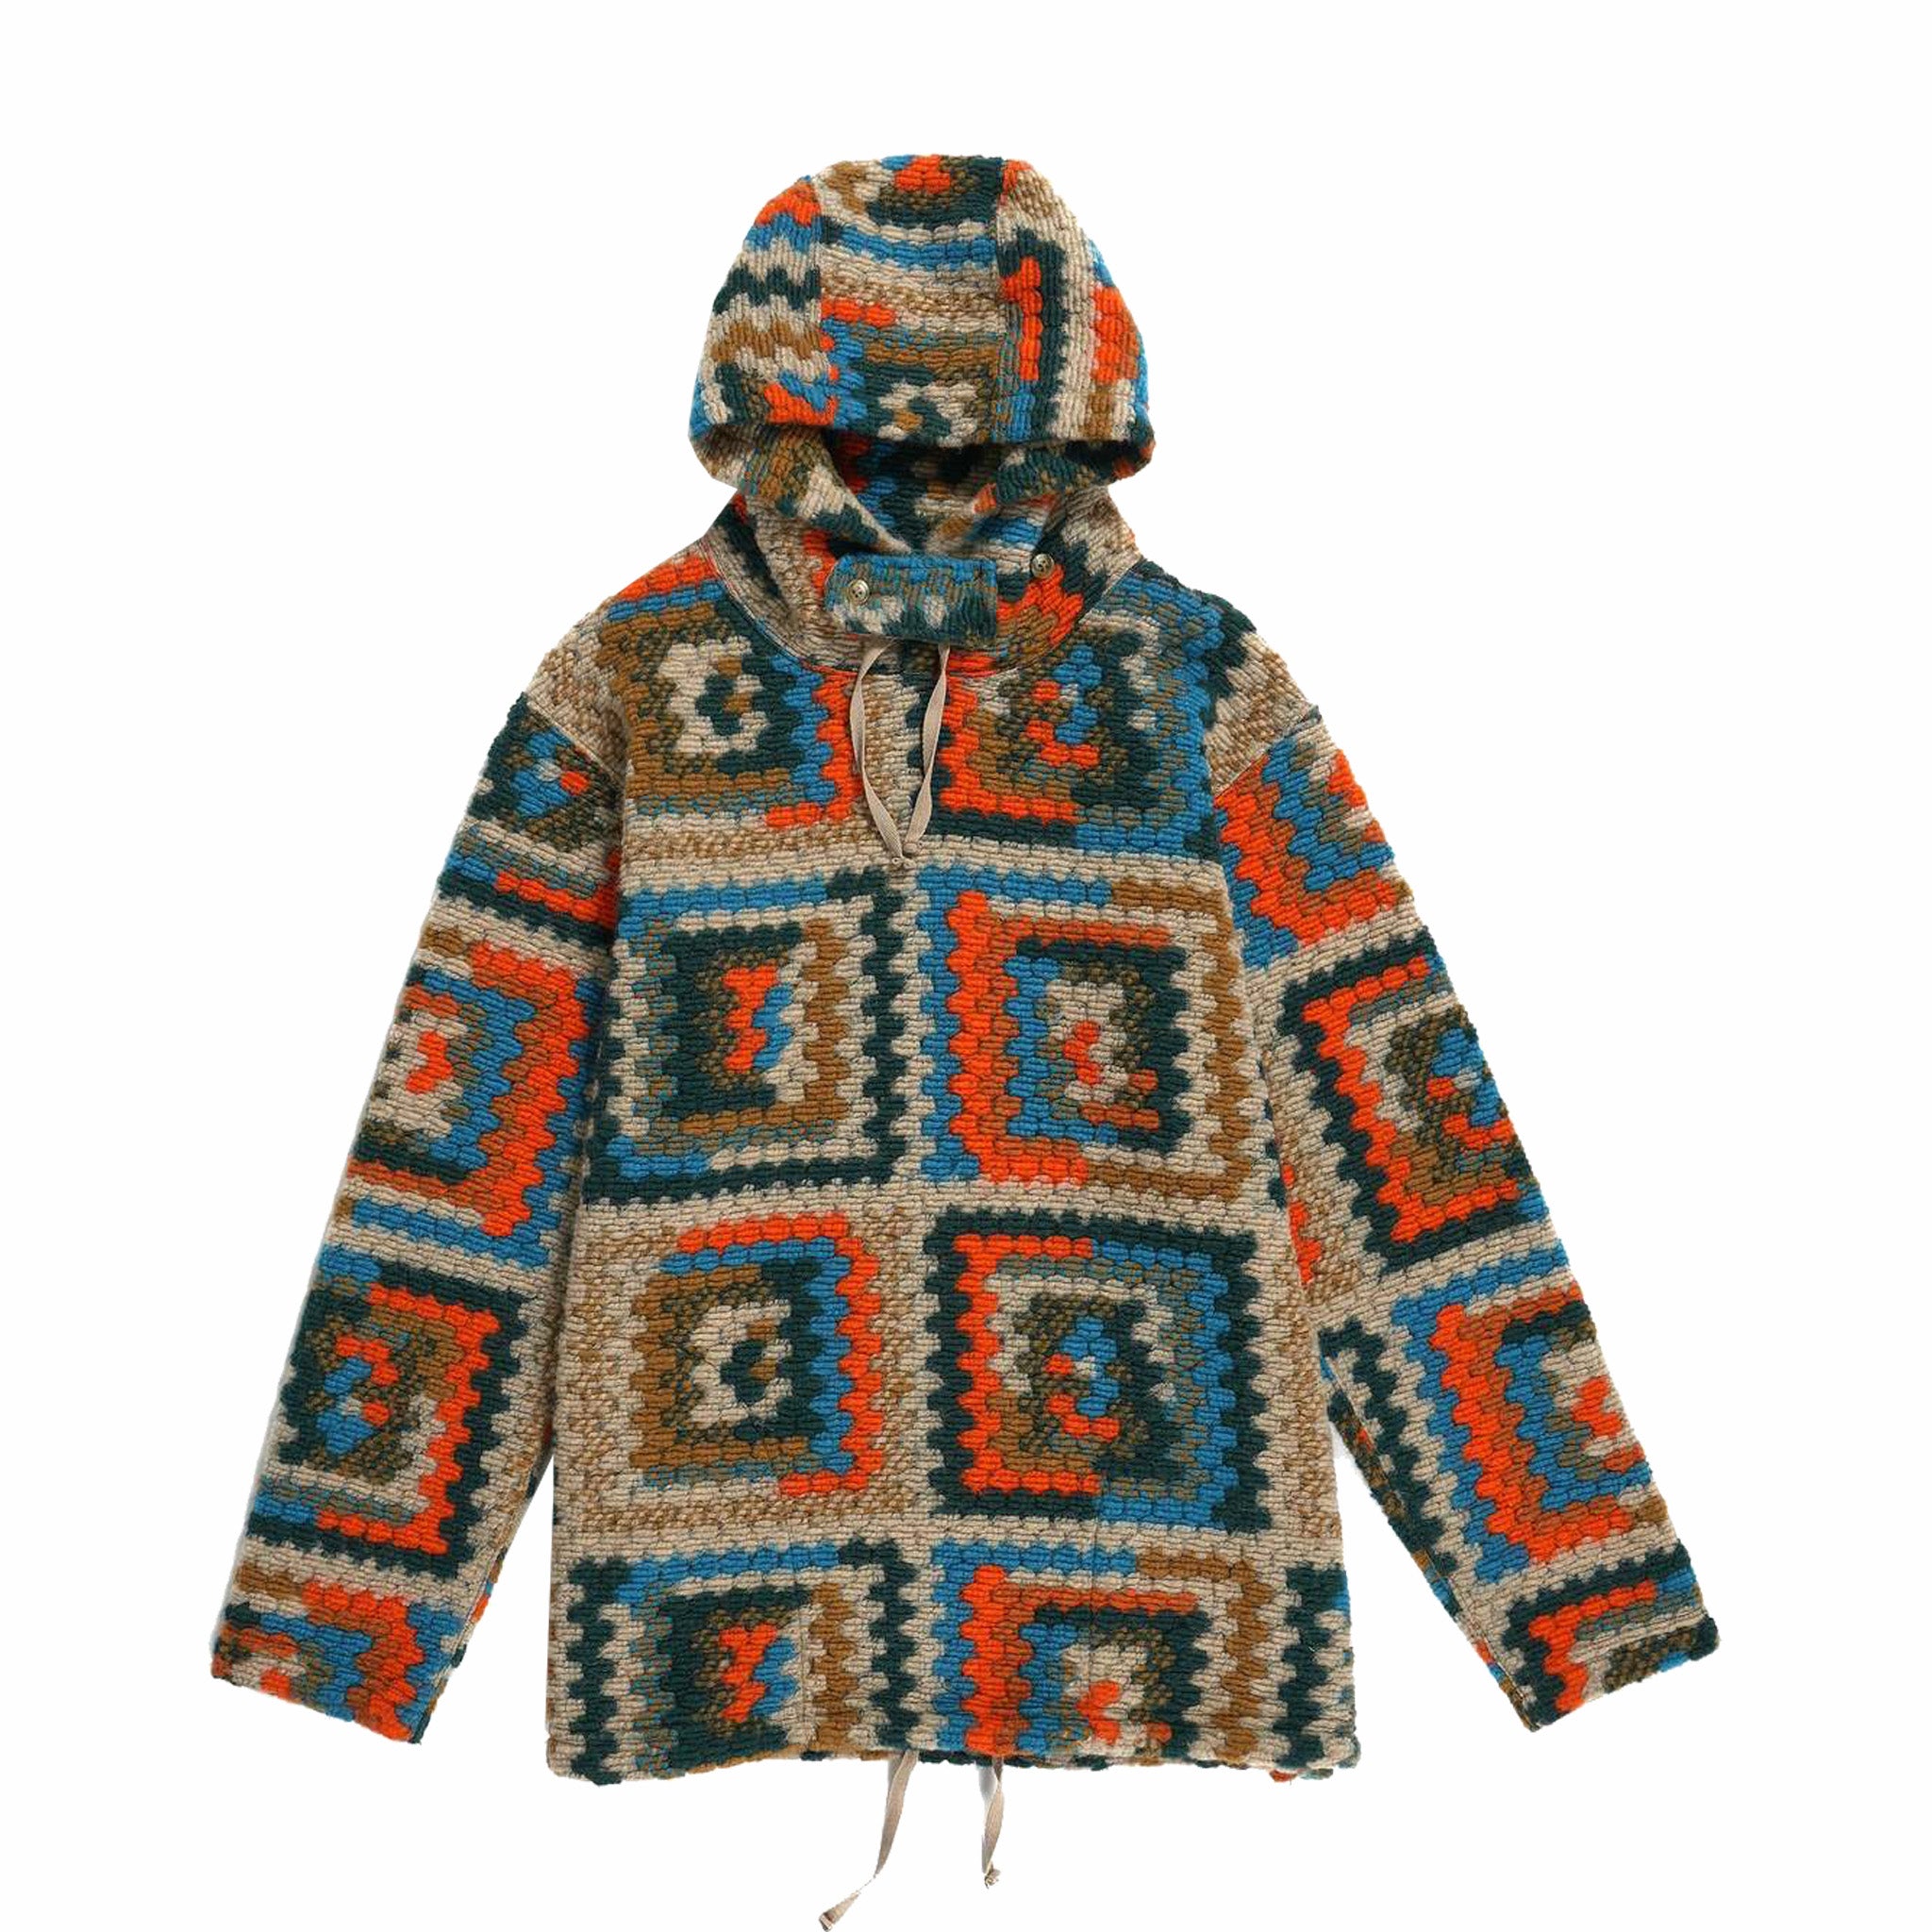 Indumenti ingegnerizzati, Engineered Garments Felpa con cappuccio a manica lunga in lana poly lavorata all'uncinetto (multicolore)